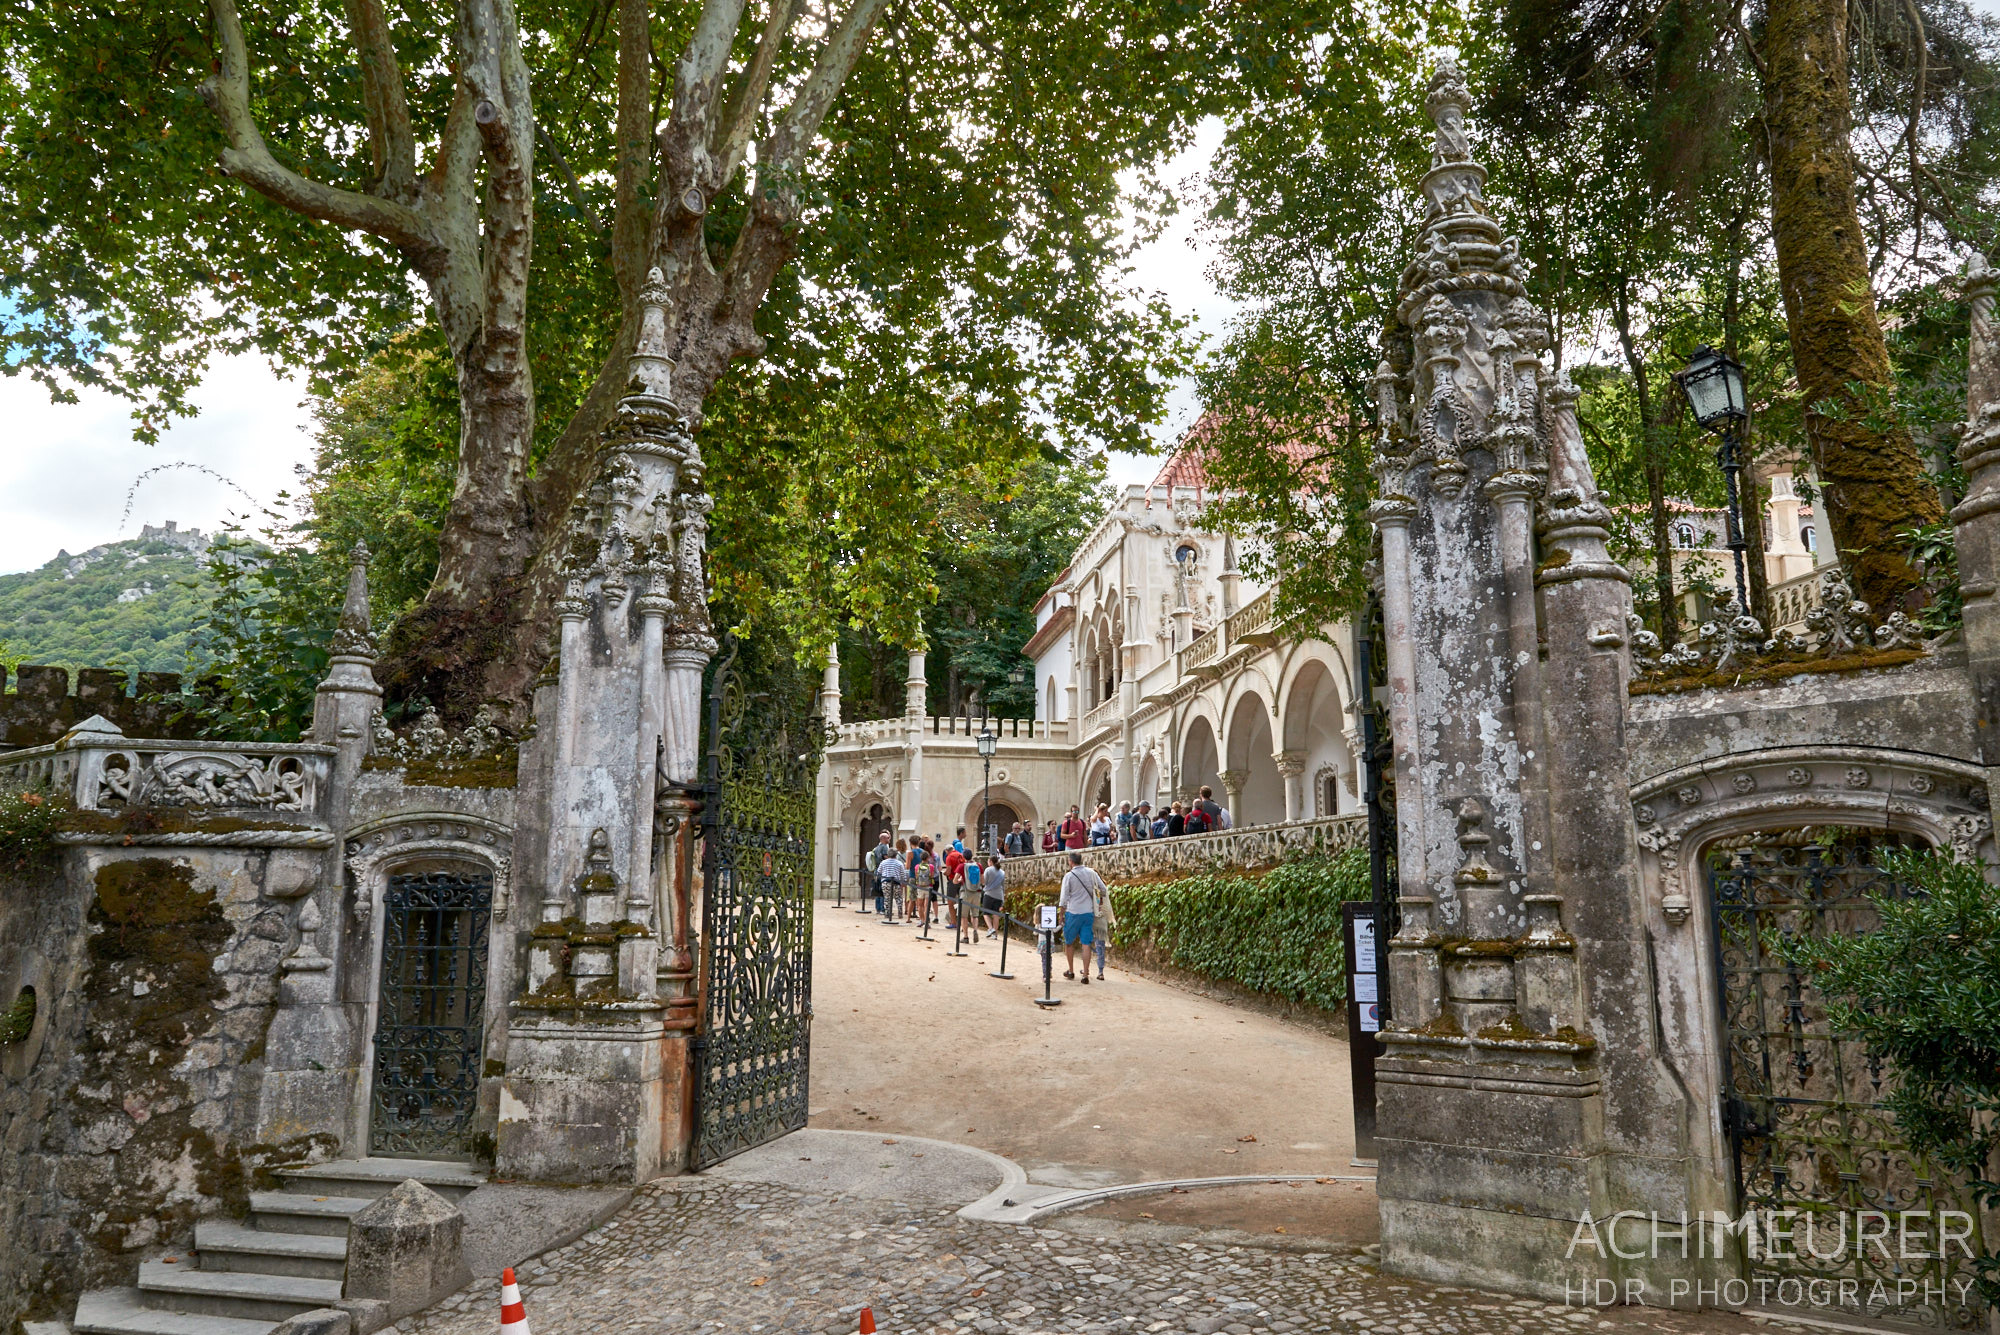 Der kleine Ort Sintra mit seinen Palästen, Schlössern und kleinen Gassen